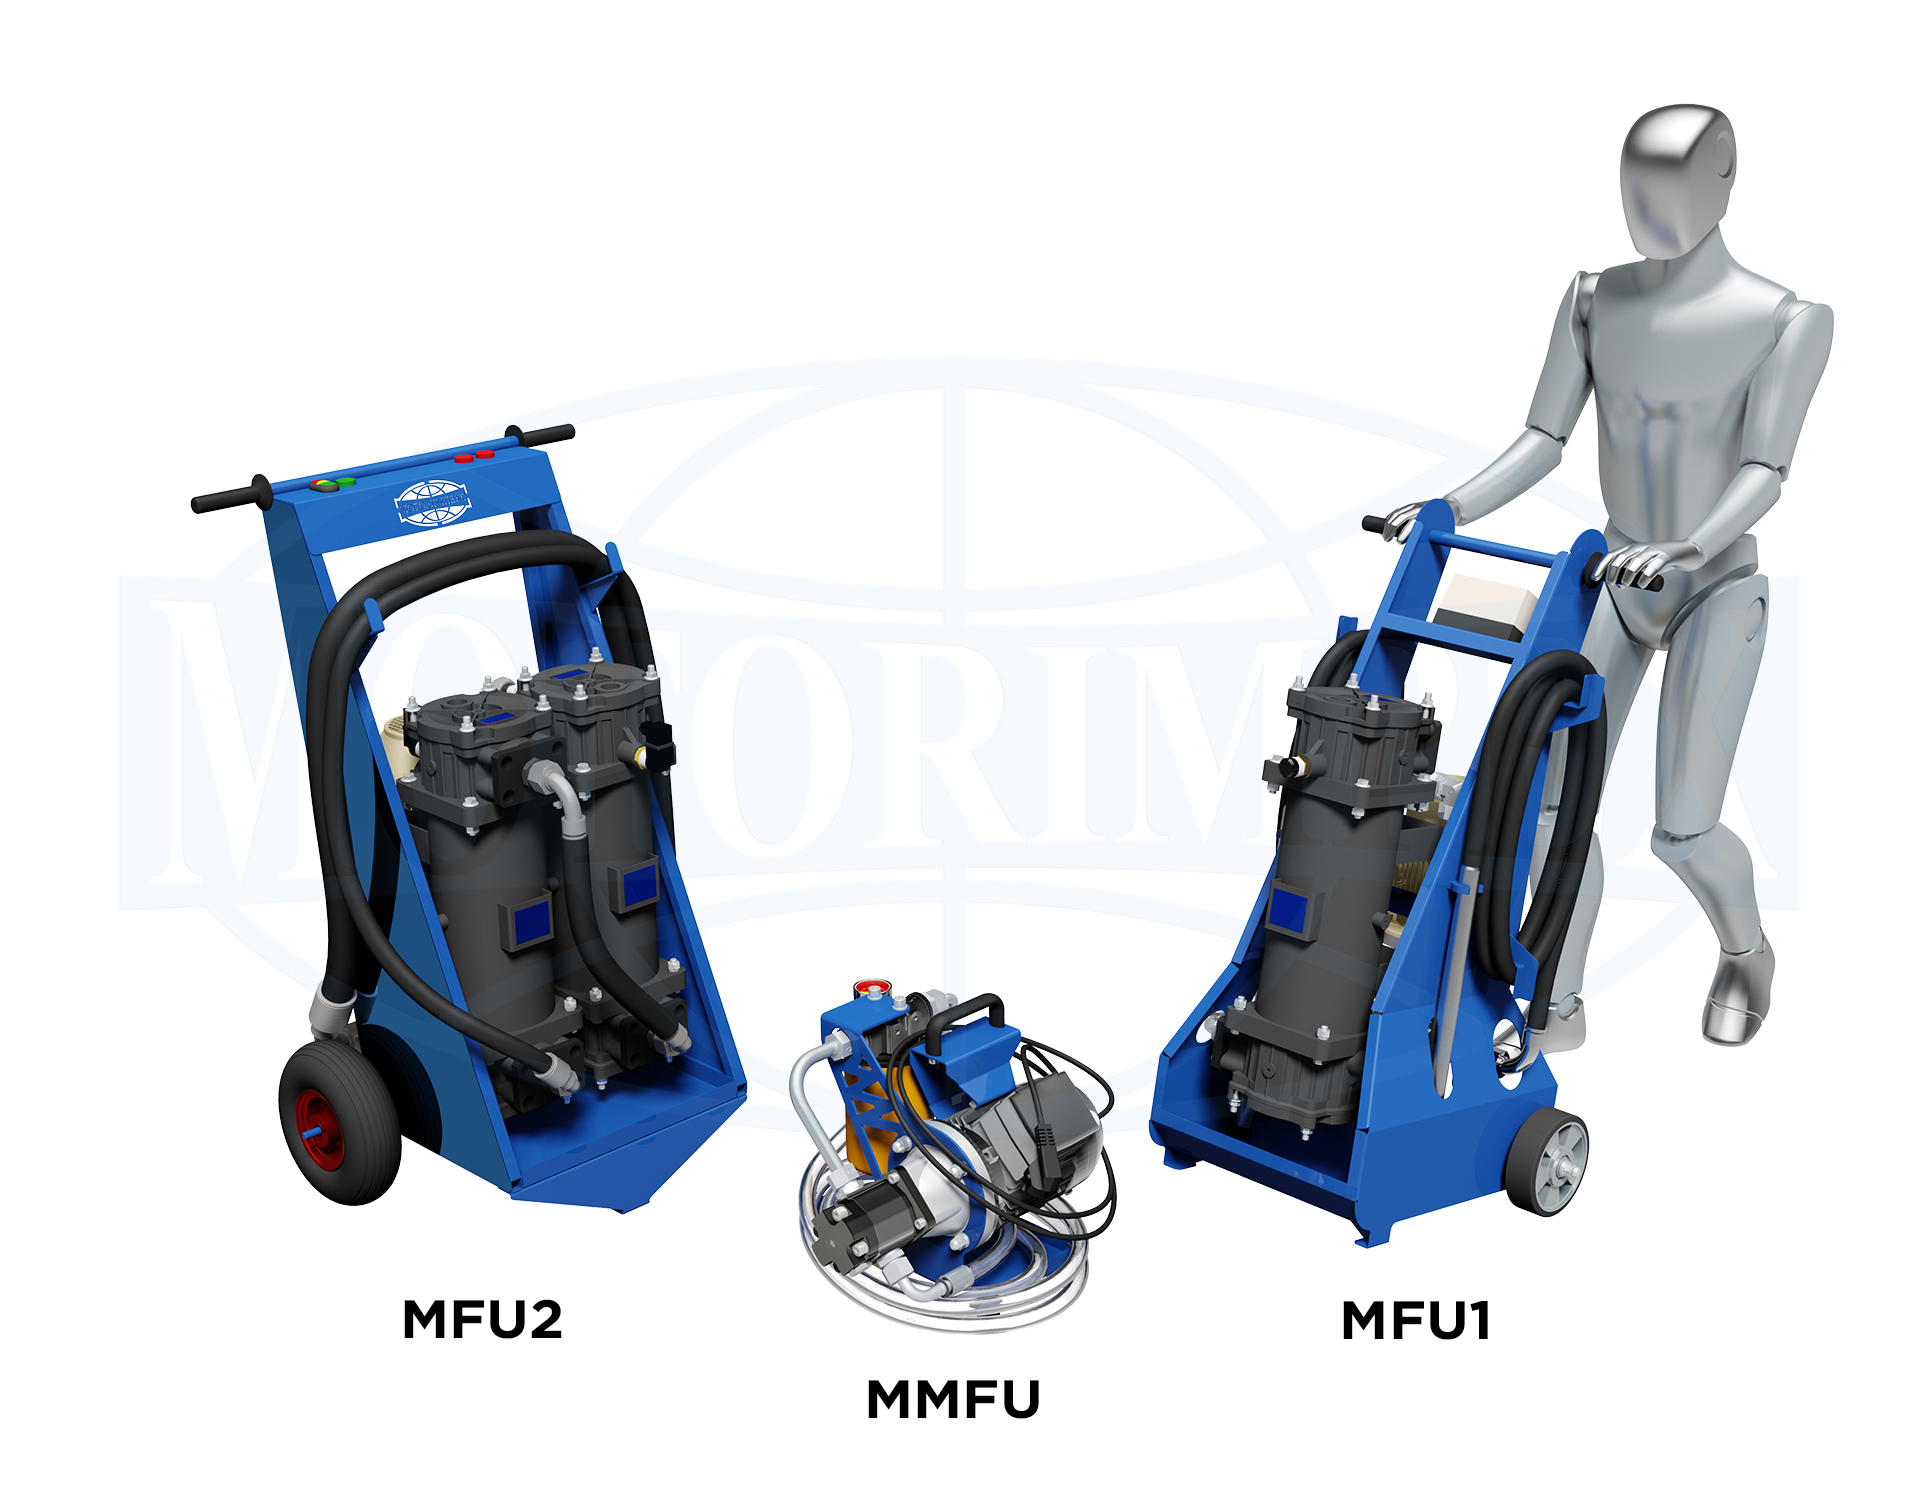 Mobile filtration units (MFU) by Motorimpex Production Enterprise